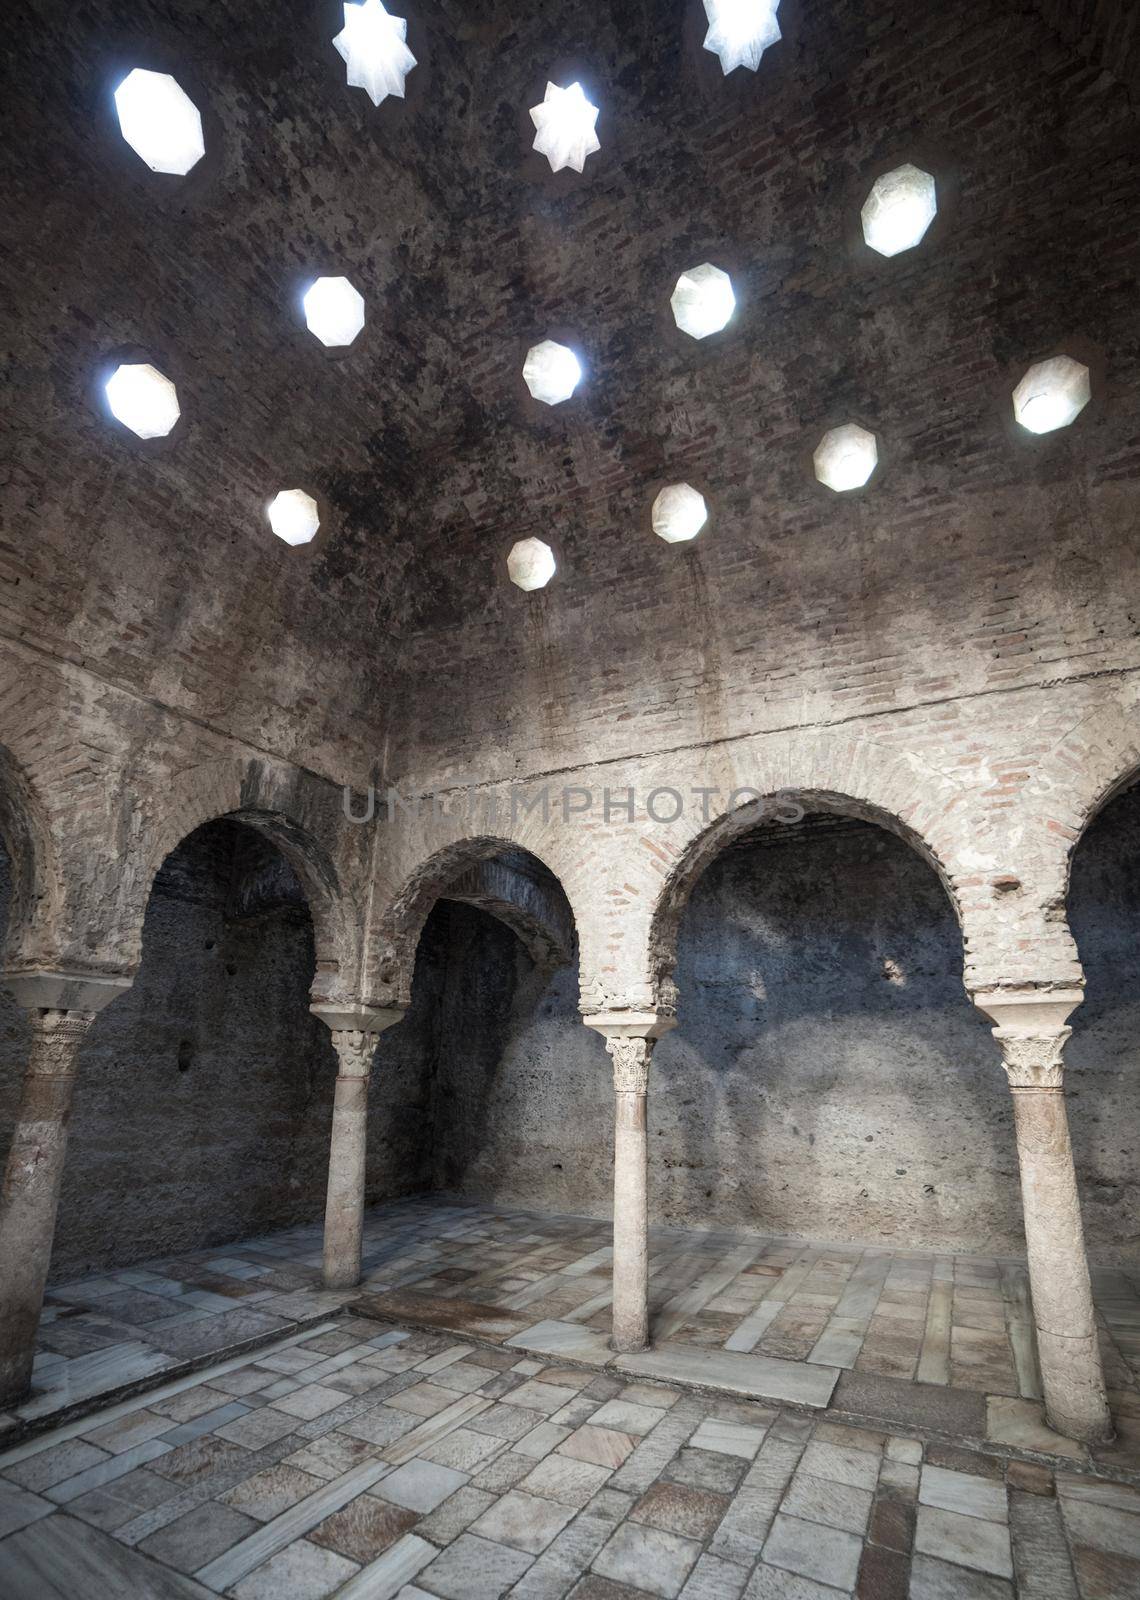 11th century Arab Baths in Granada, Spain